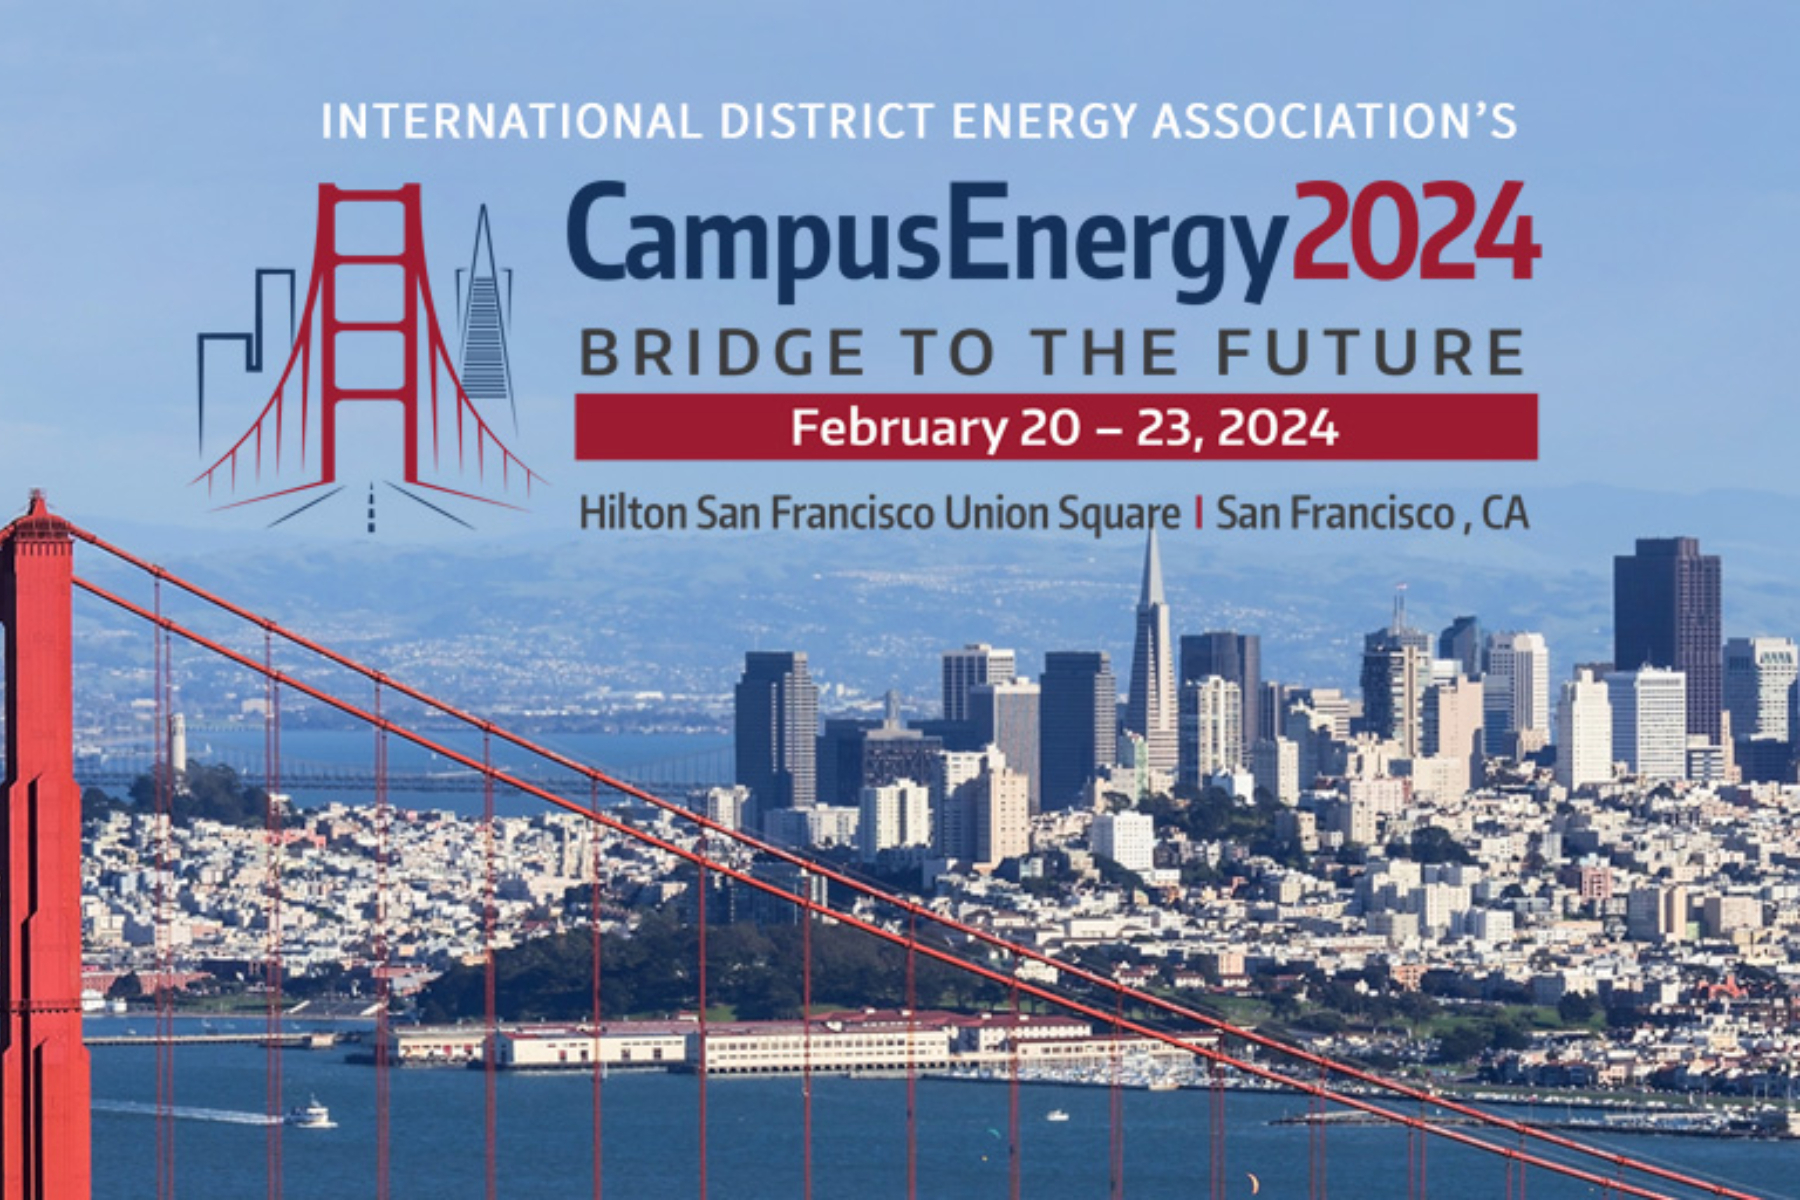 AgenciaSE participará en CampusEnergy 2024 sobre energía distrital en Estados Unidos